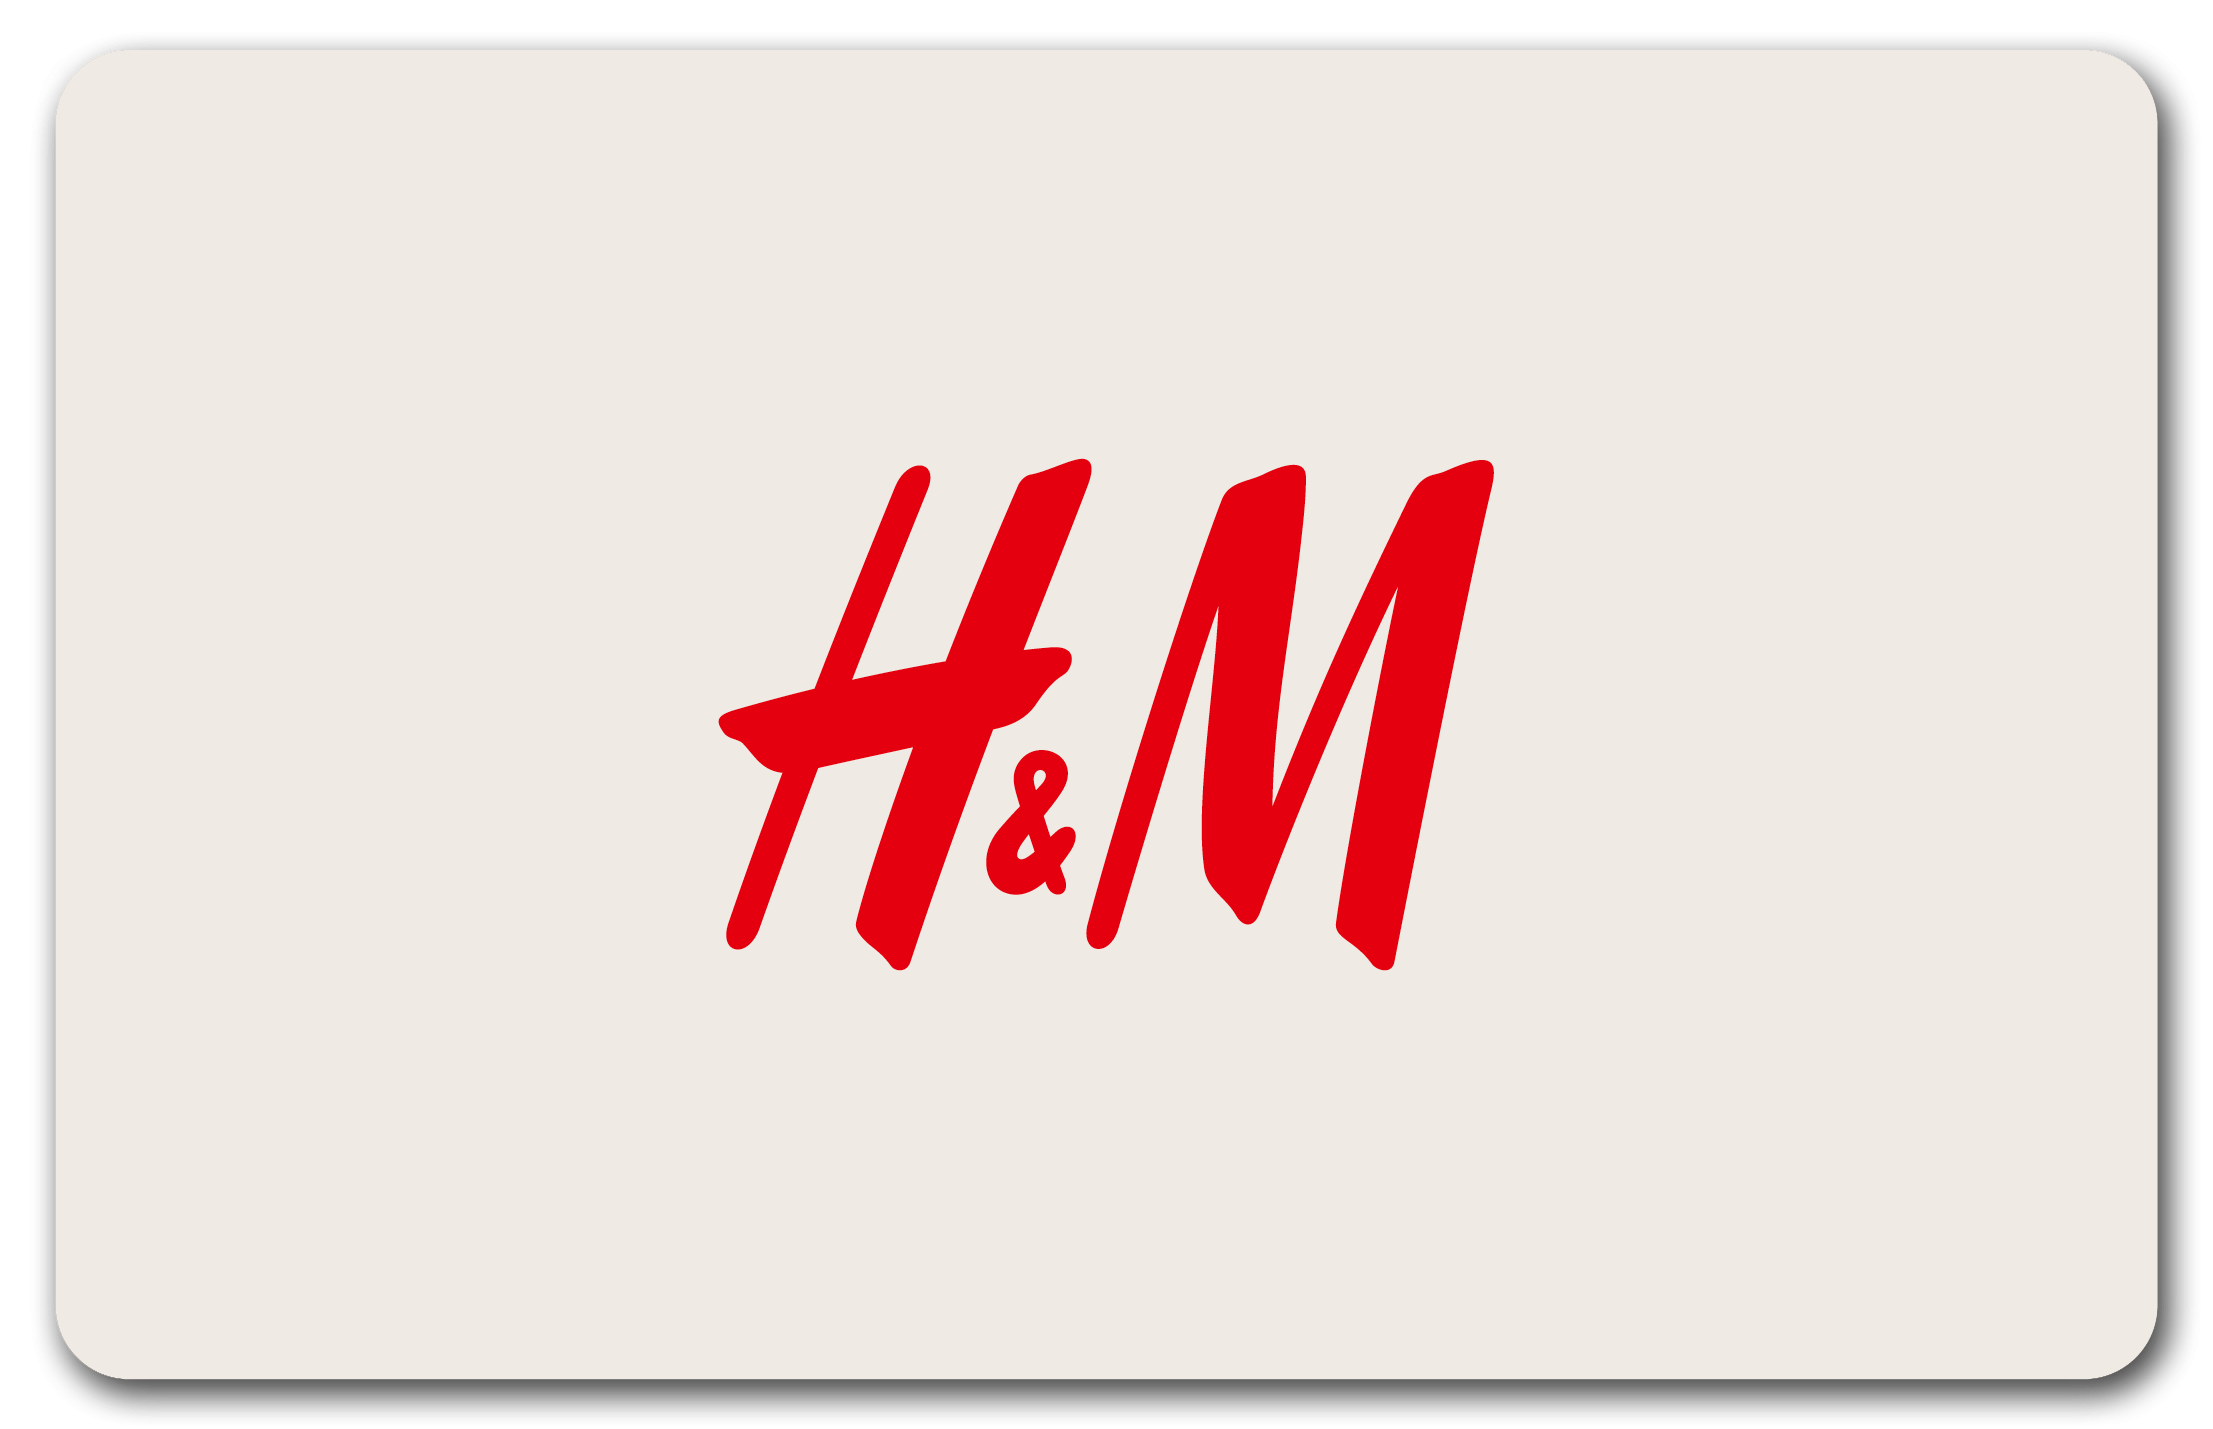 H&M Strasbourg